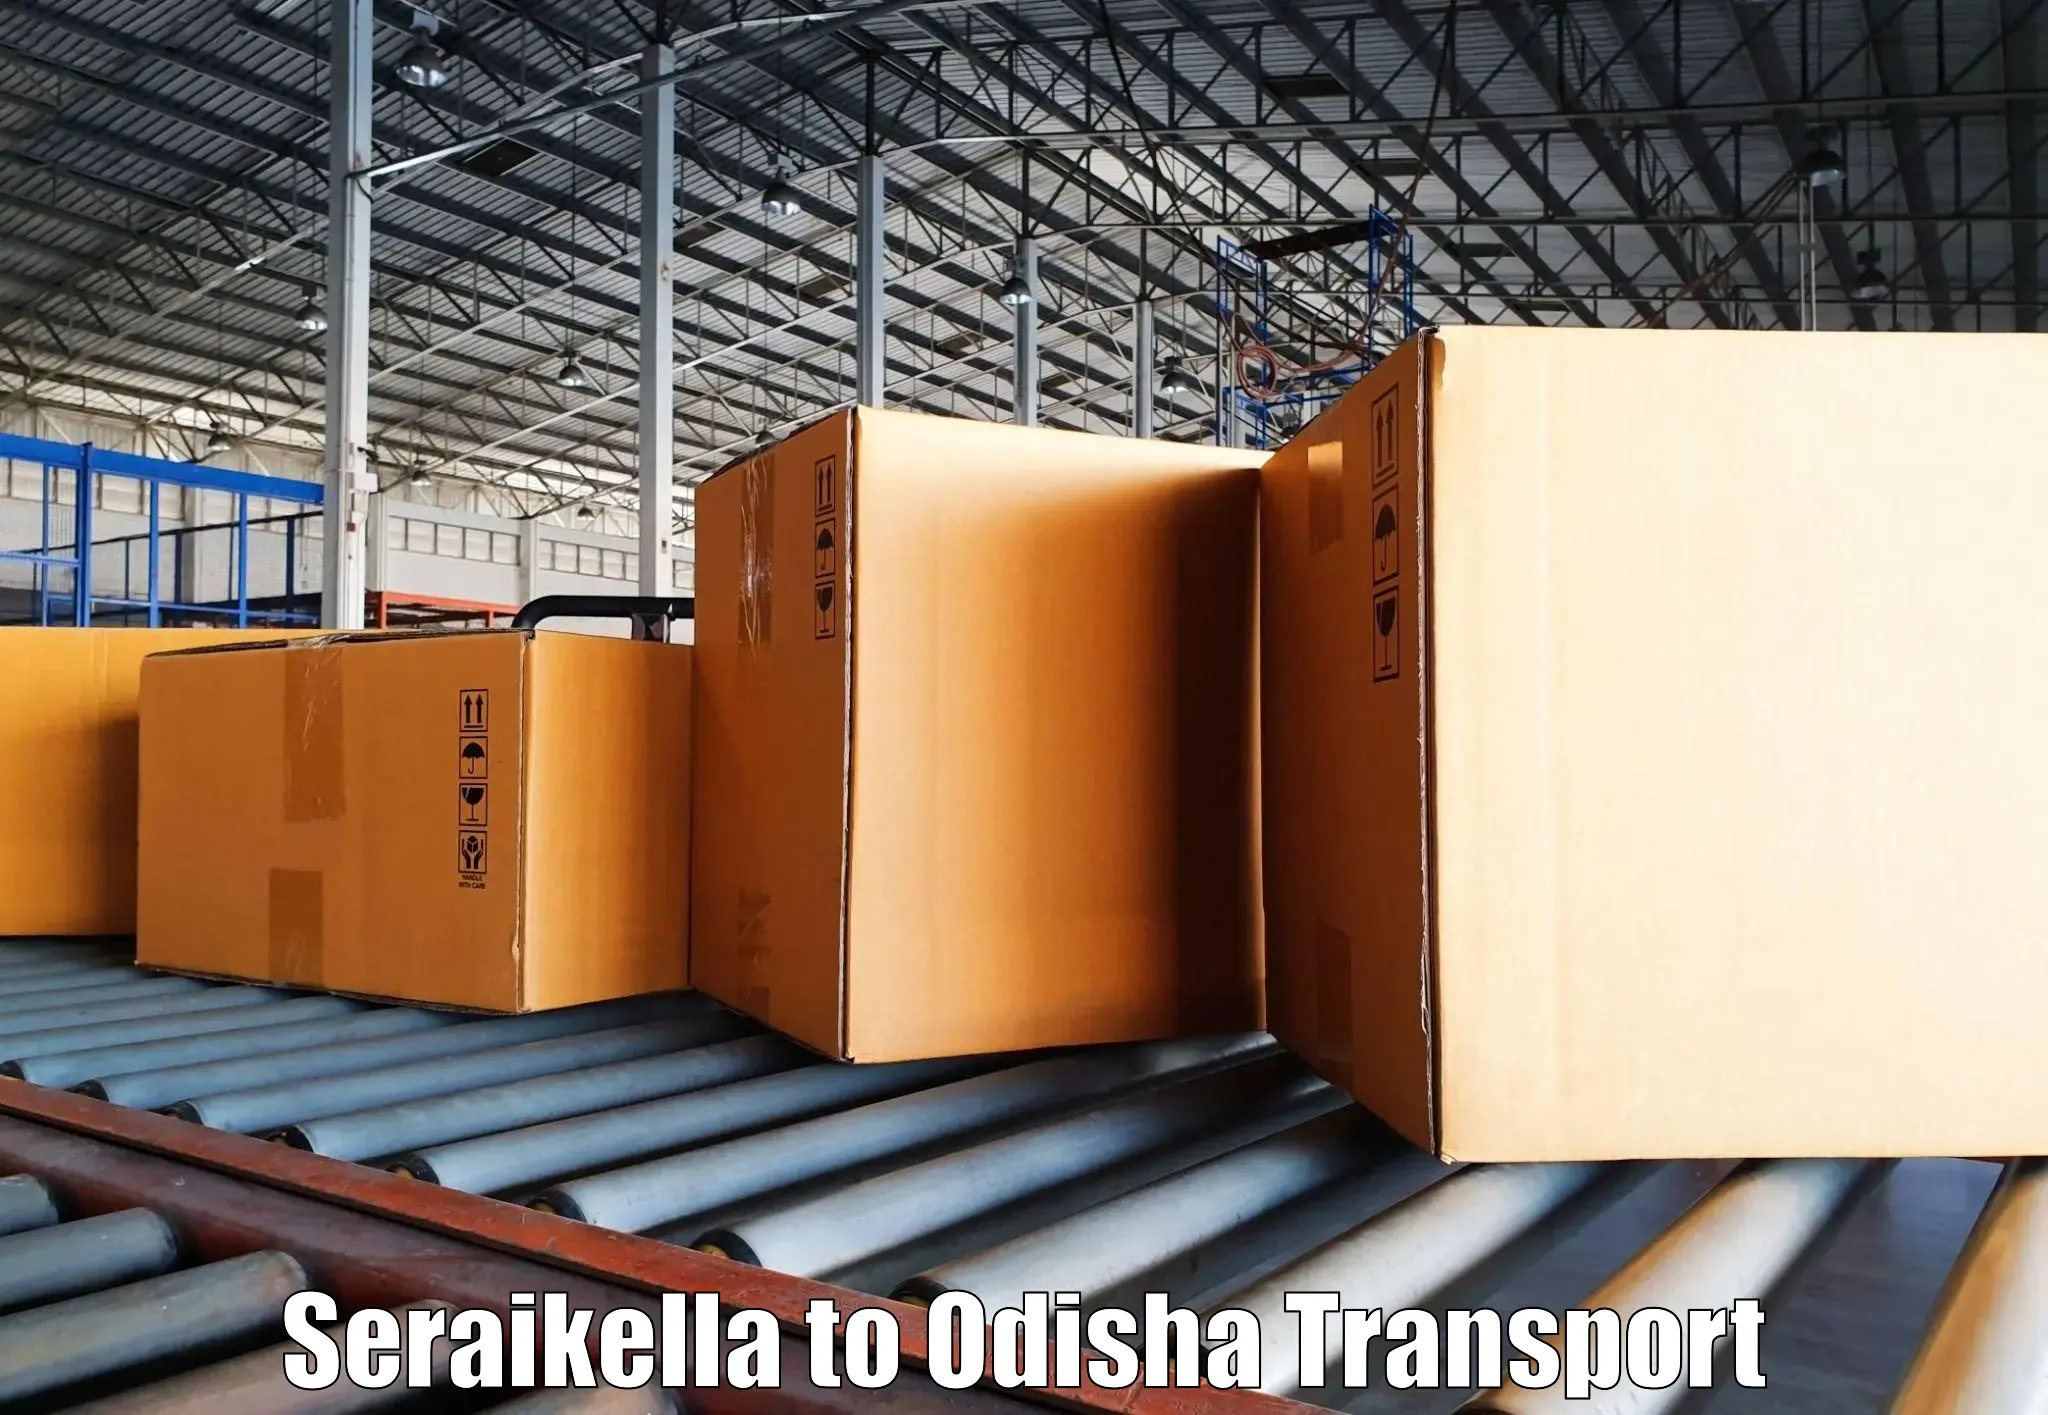 Daily transport service Seraikella to Balipokhari